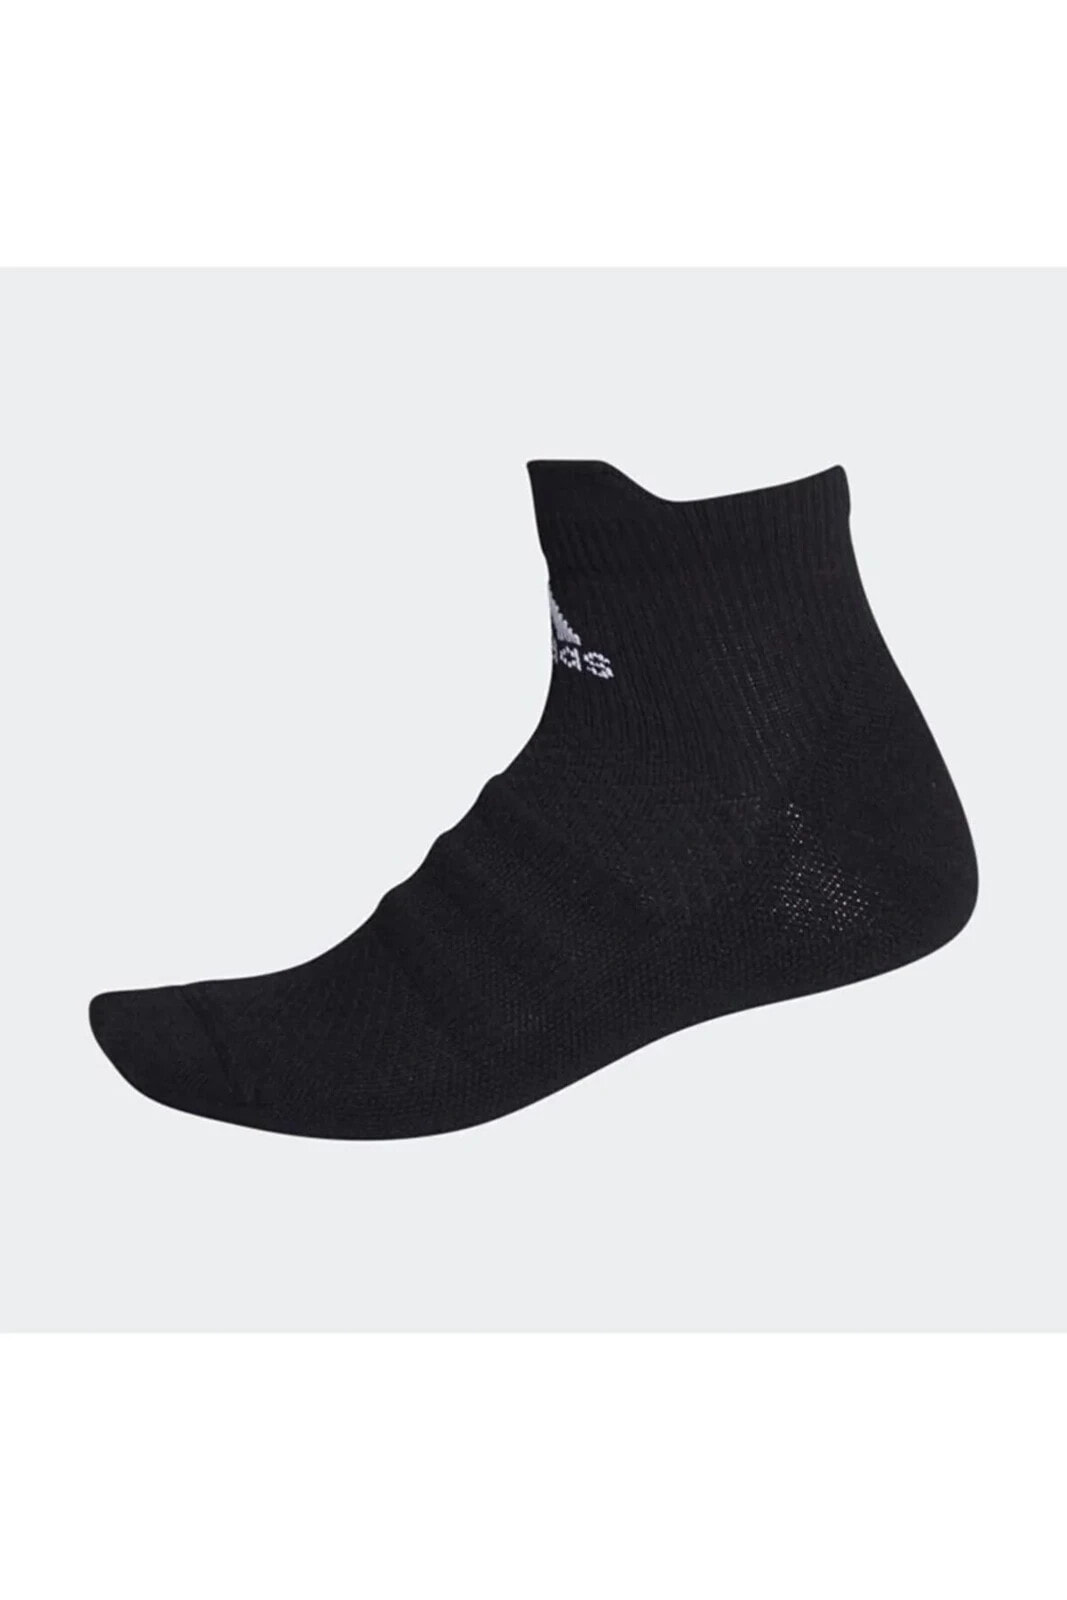 Fk0962 Techfit Bilek Boy Siyah Çorap